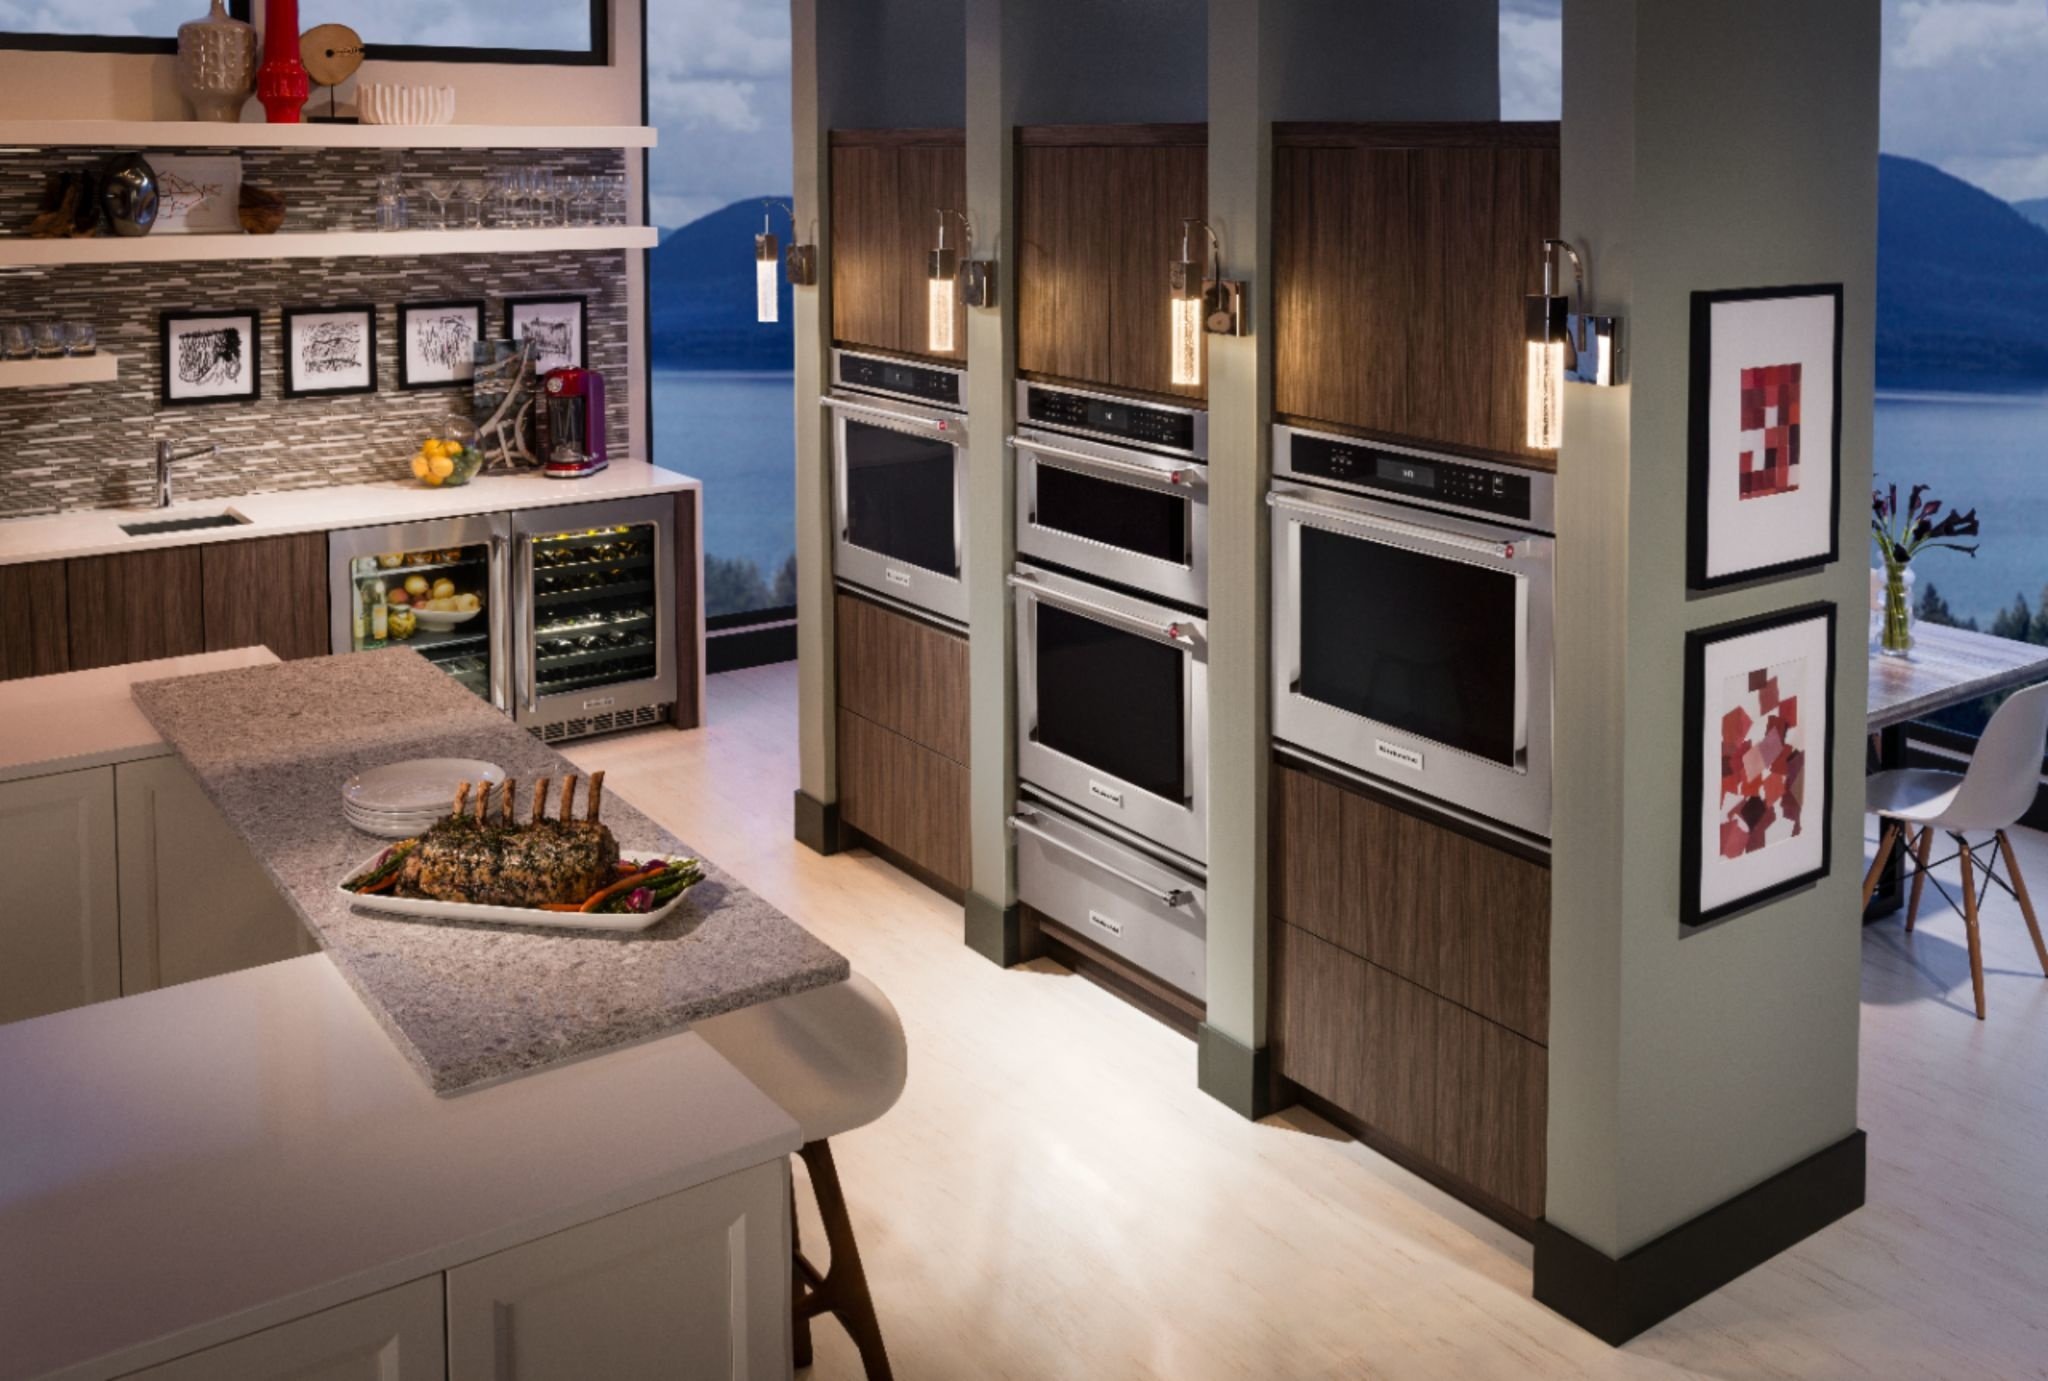 KitchenAid - KOES527PBS - KitchenAid® Single Wall Ovens with Air